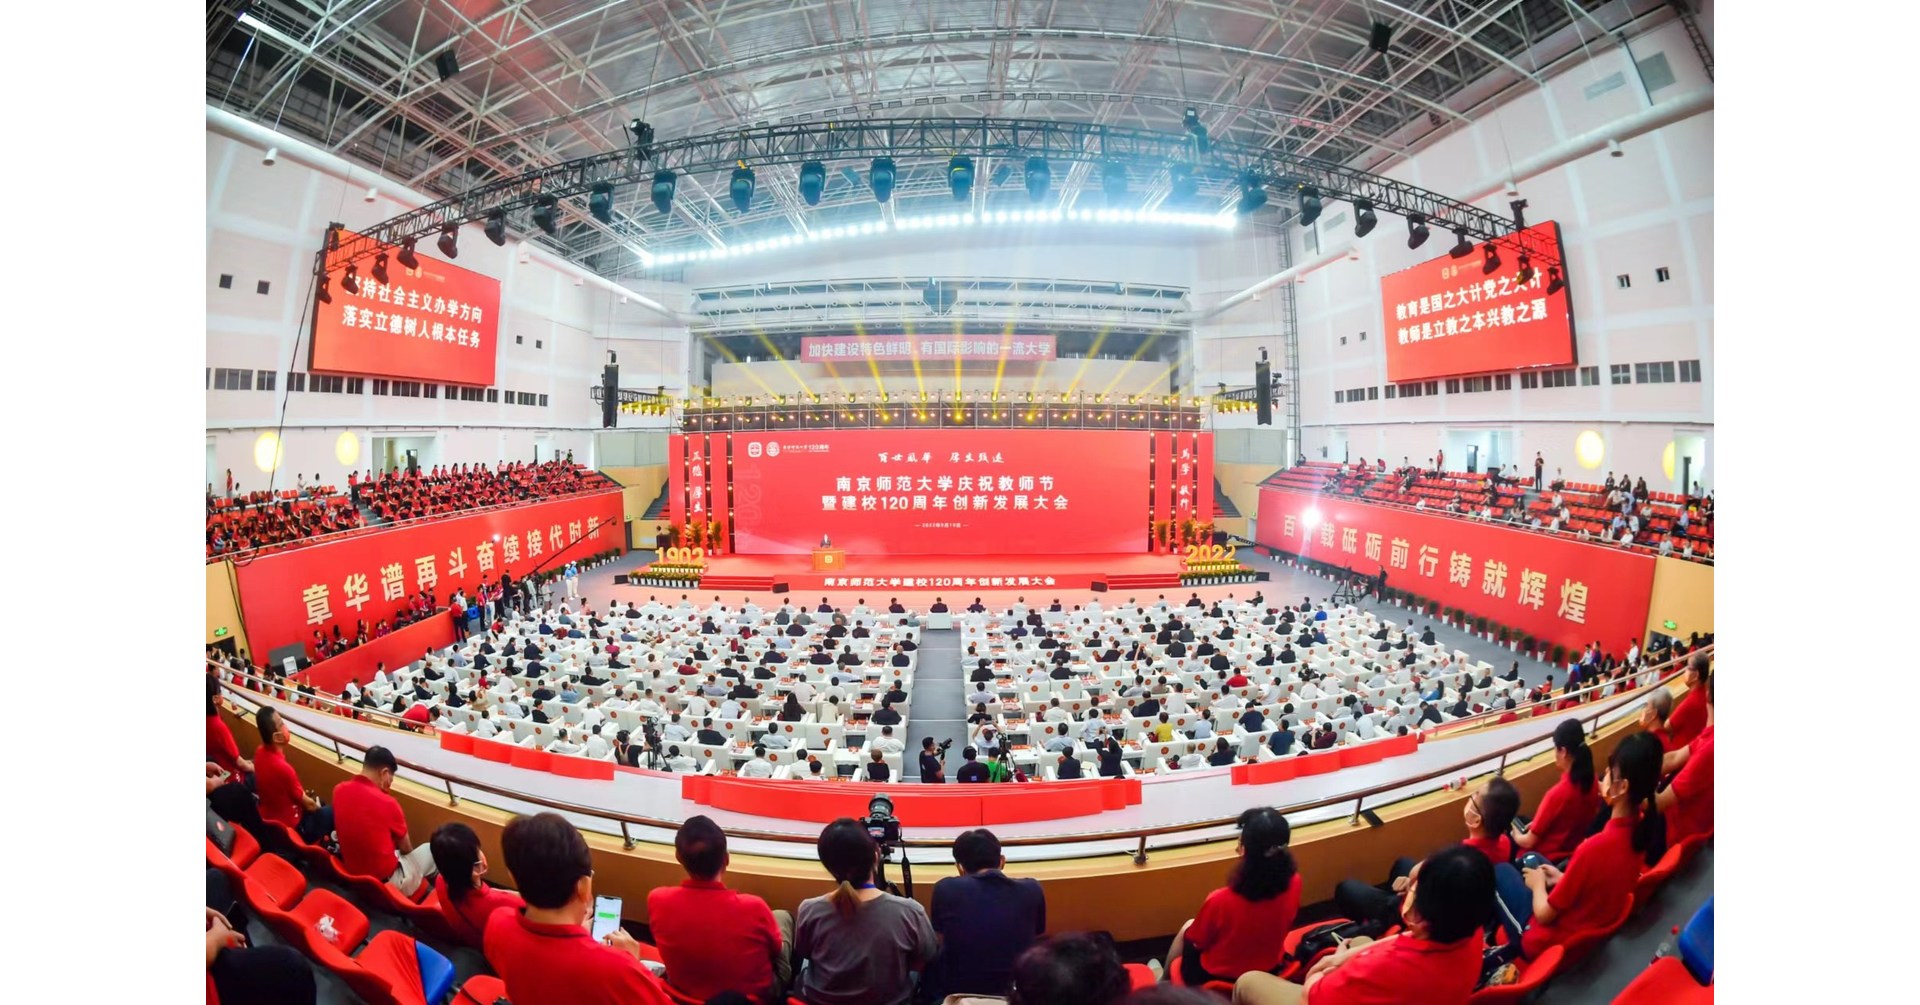 庆祝南京师范大学建校120周年创新发展大会在南京召开